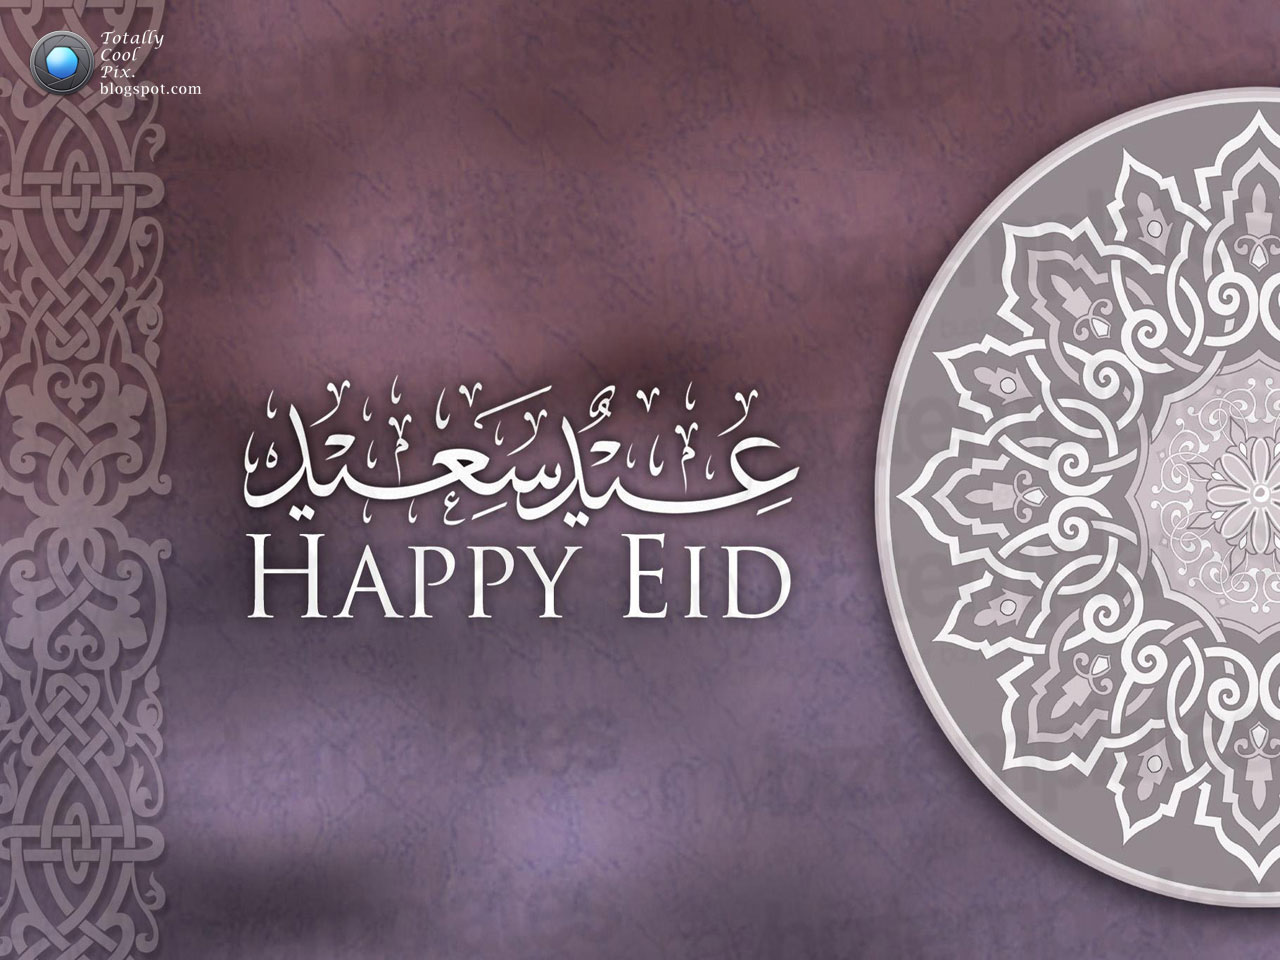 http://4.bp.blogspot.com/-JLs4V4GZvz0/UC1FR8ZPhJI/AAAAAAAACio/F6TRNGFP1kk/s1600/Top-60-Eid-ul-Fitr-Hd-Wallpapers-and-Eid-Mubarak-Greetings-Cards-2012-48.jpg